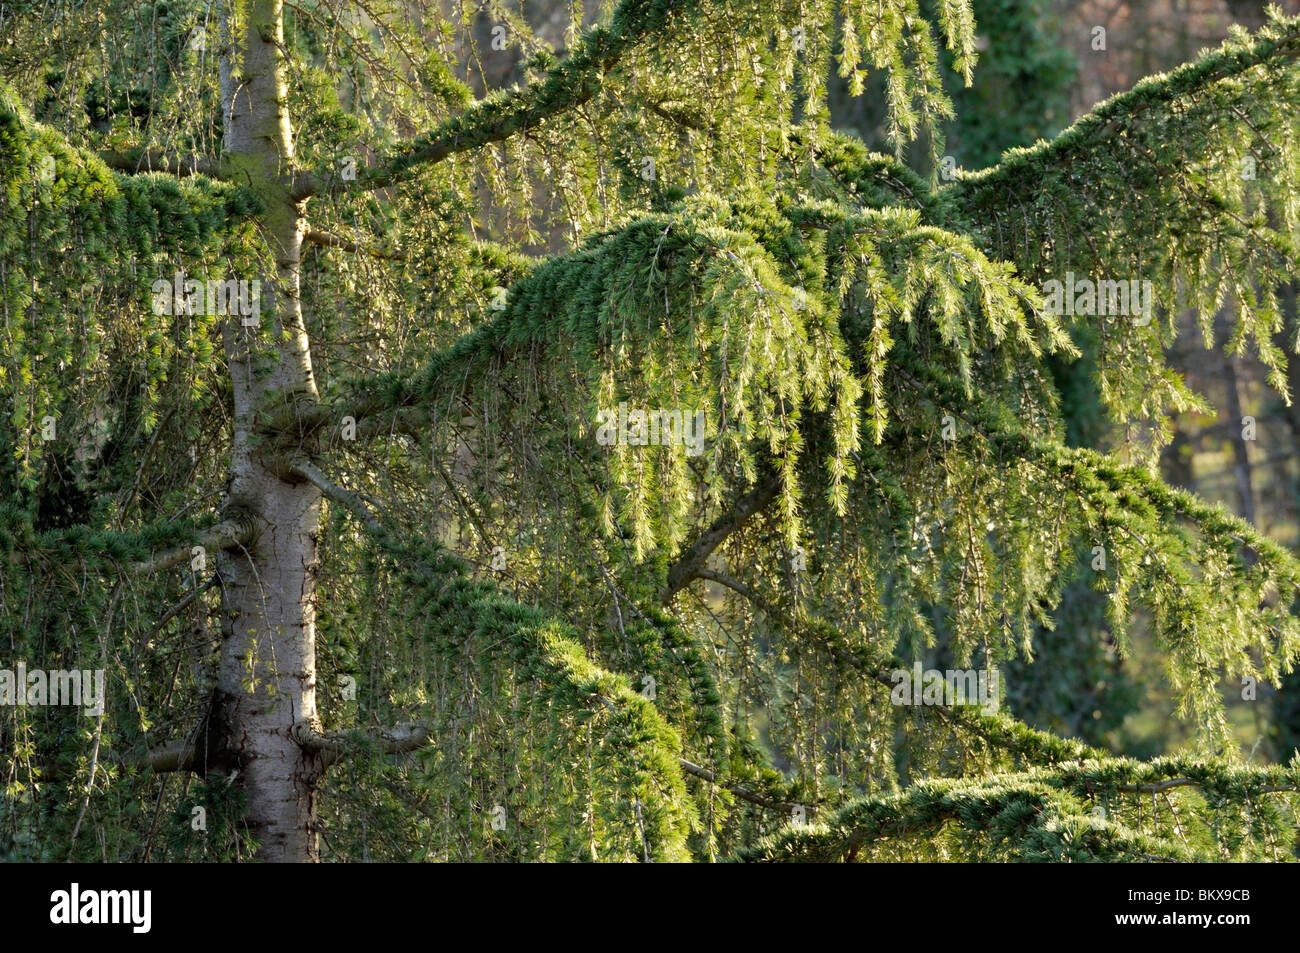 Himalayan cedar (Cedrus deodara) Stock Photo